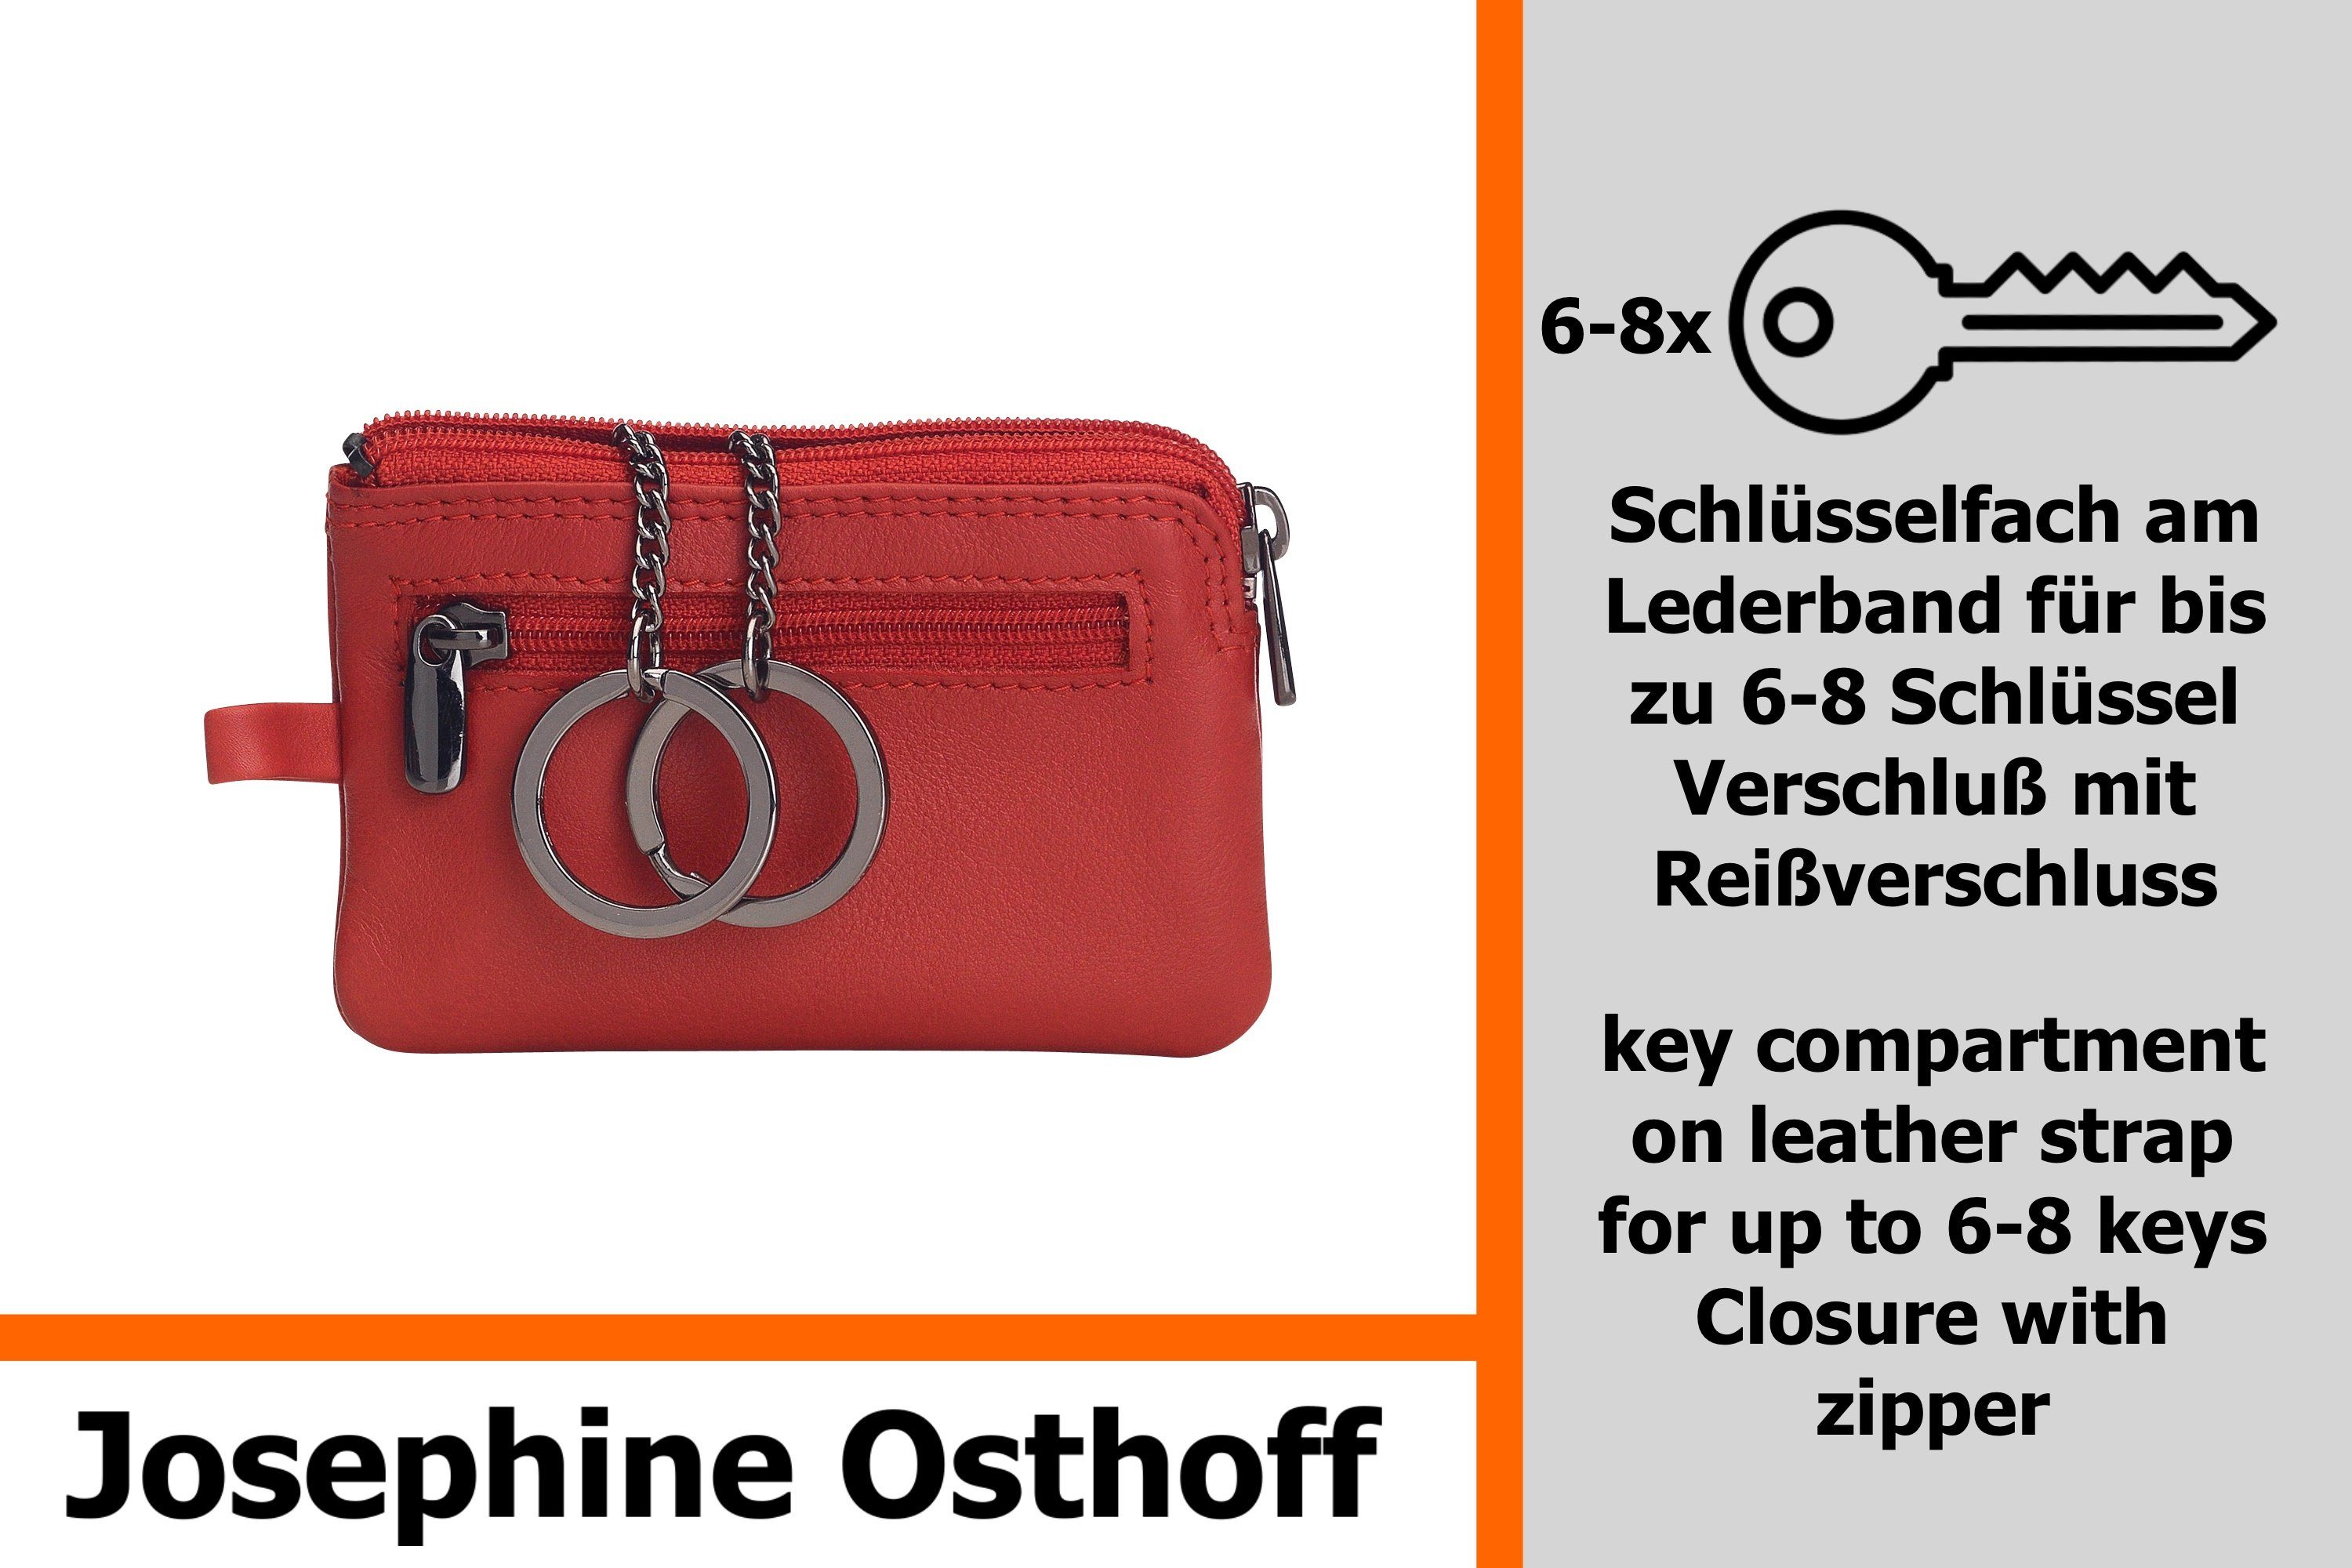 Josephine Osthoff Schlüsseltasche Nano Schlüsseletui kirsche Rot klein